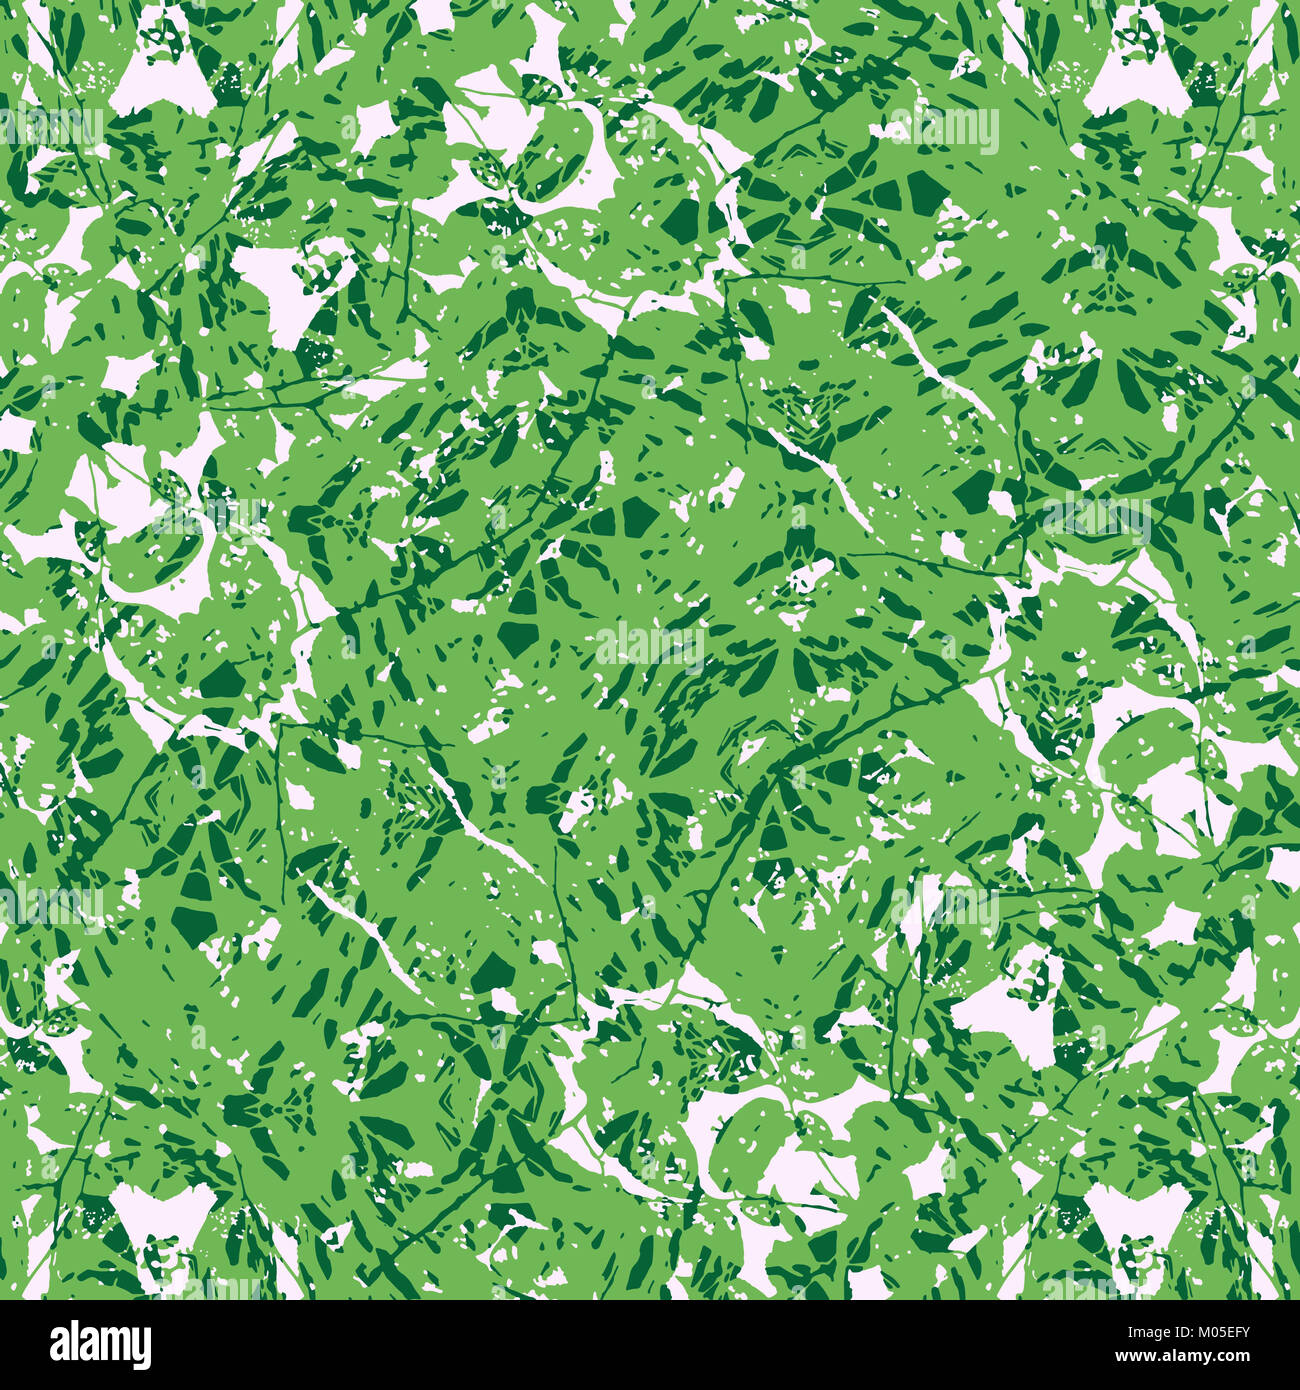 Digitale Collage Technik camouflage style Motiv Muster in Grün und Weiß  gehalten Stockfotografie - Alamy